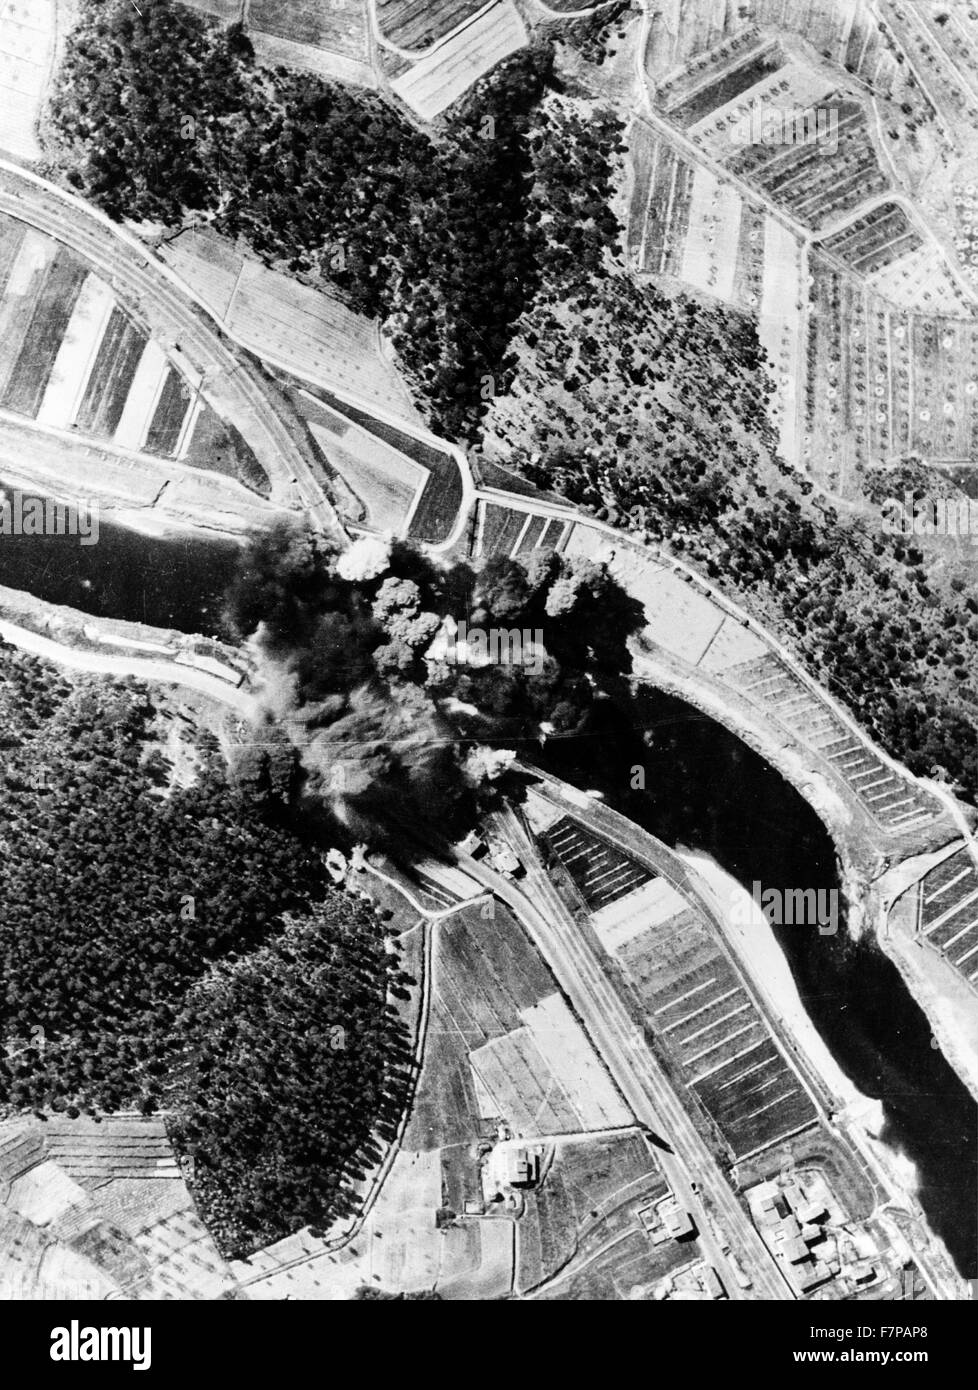 La fumée enveloppe la Signa Pont. Une autre cible pour l'opération "étrangler" le pont, signa, à l'ouest de Florence, a été brisé par des tirs directs de bombardiers alliés de la Méditerranée. Banque D'Images